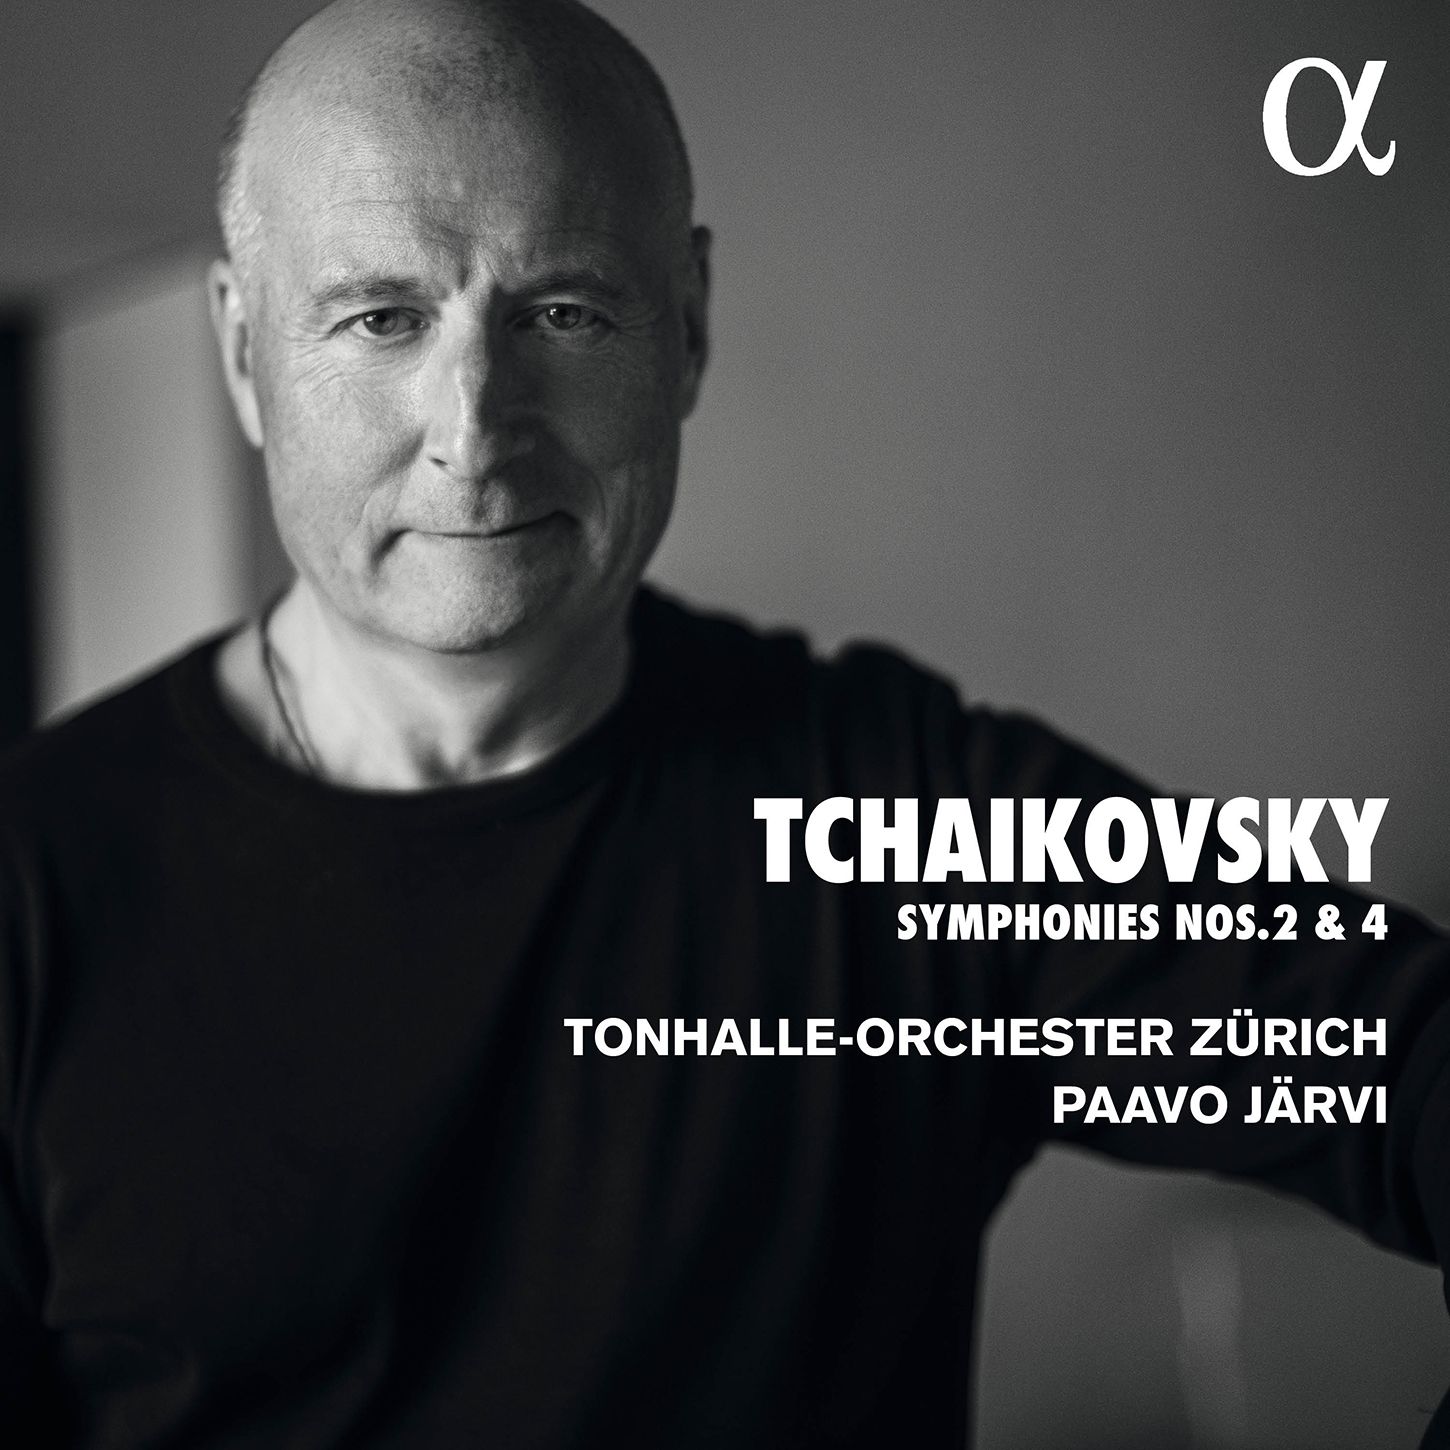 The return of Paavo Järvi: Tchaikovsky Symphonies 2 & 4